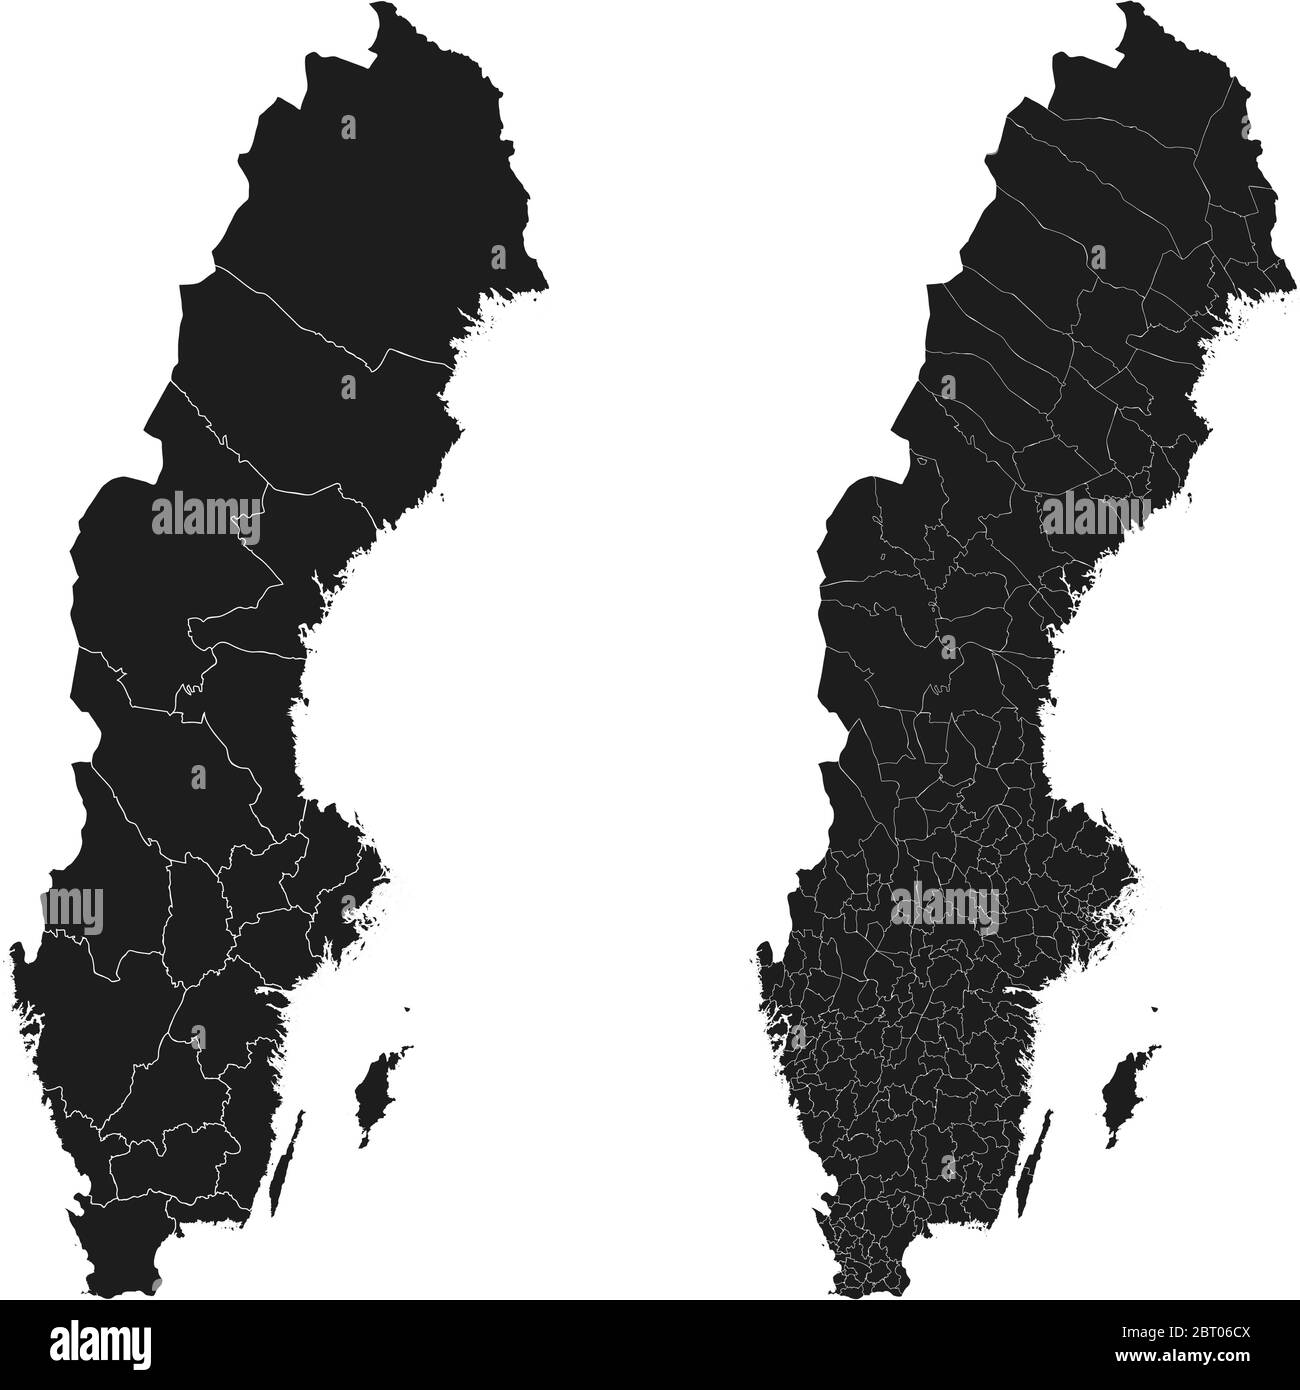 Cartes vectorielles de la Suède avec régions administratives, municipalités, départements, frontières Illustration de Vecteur